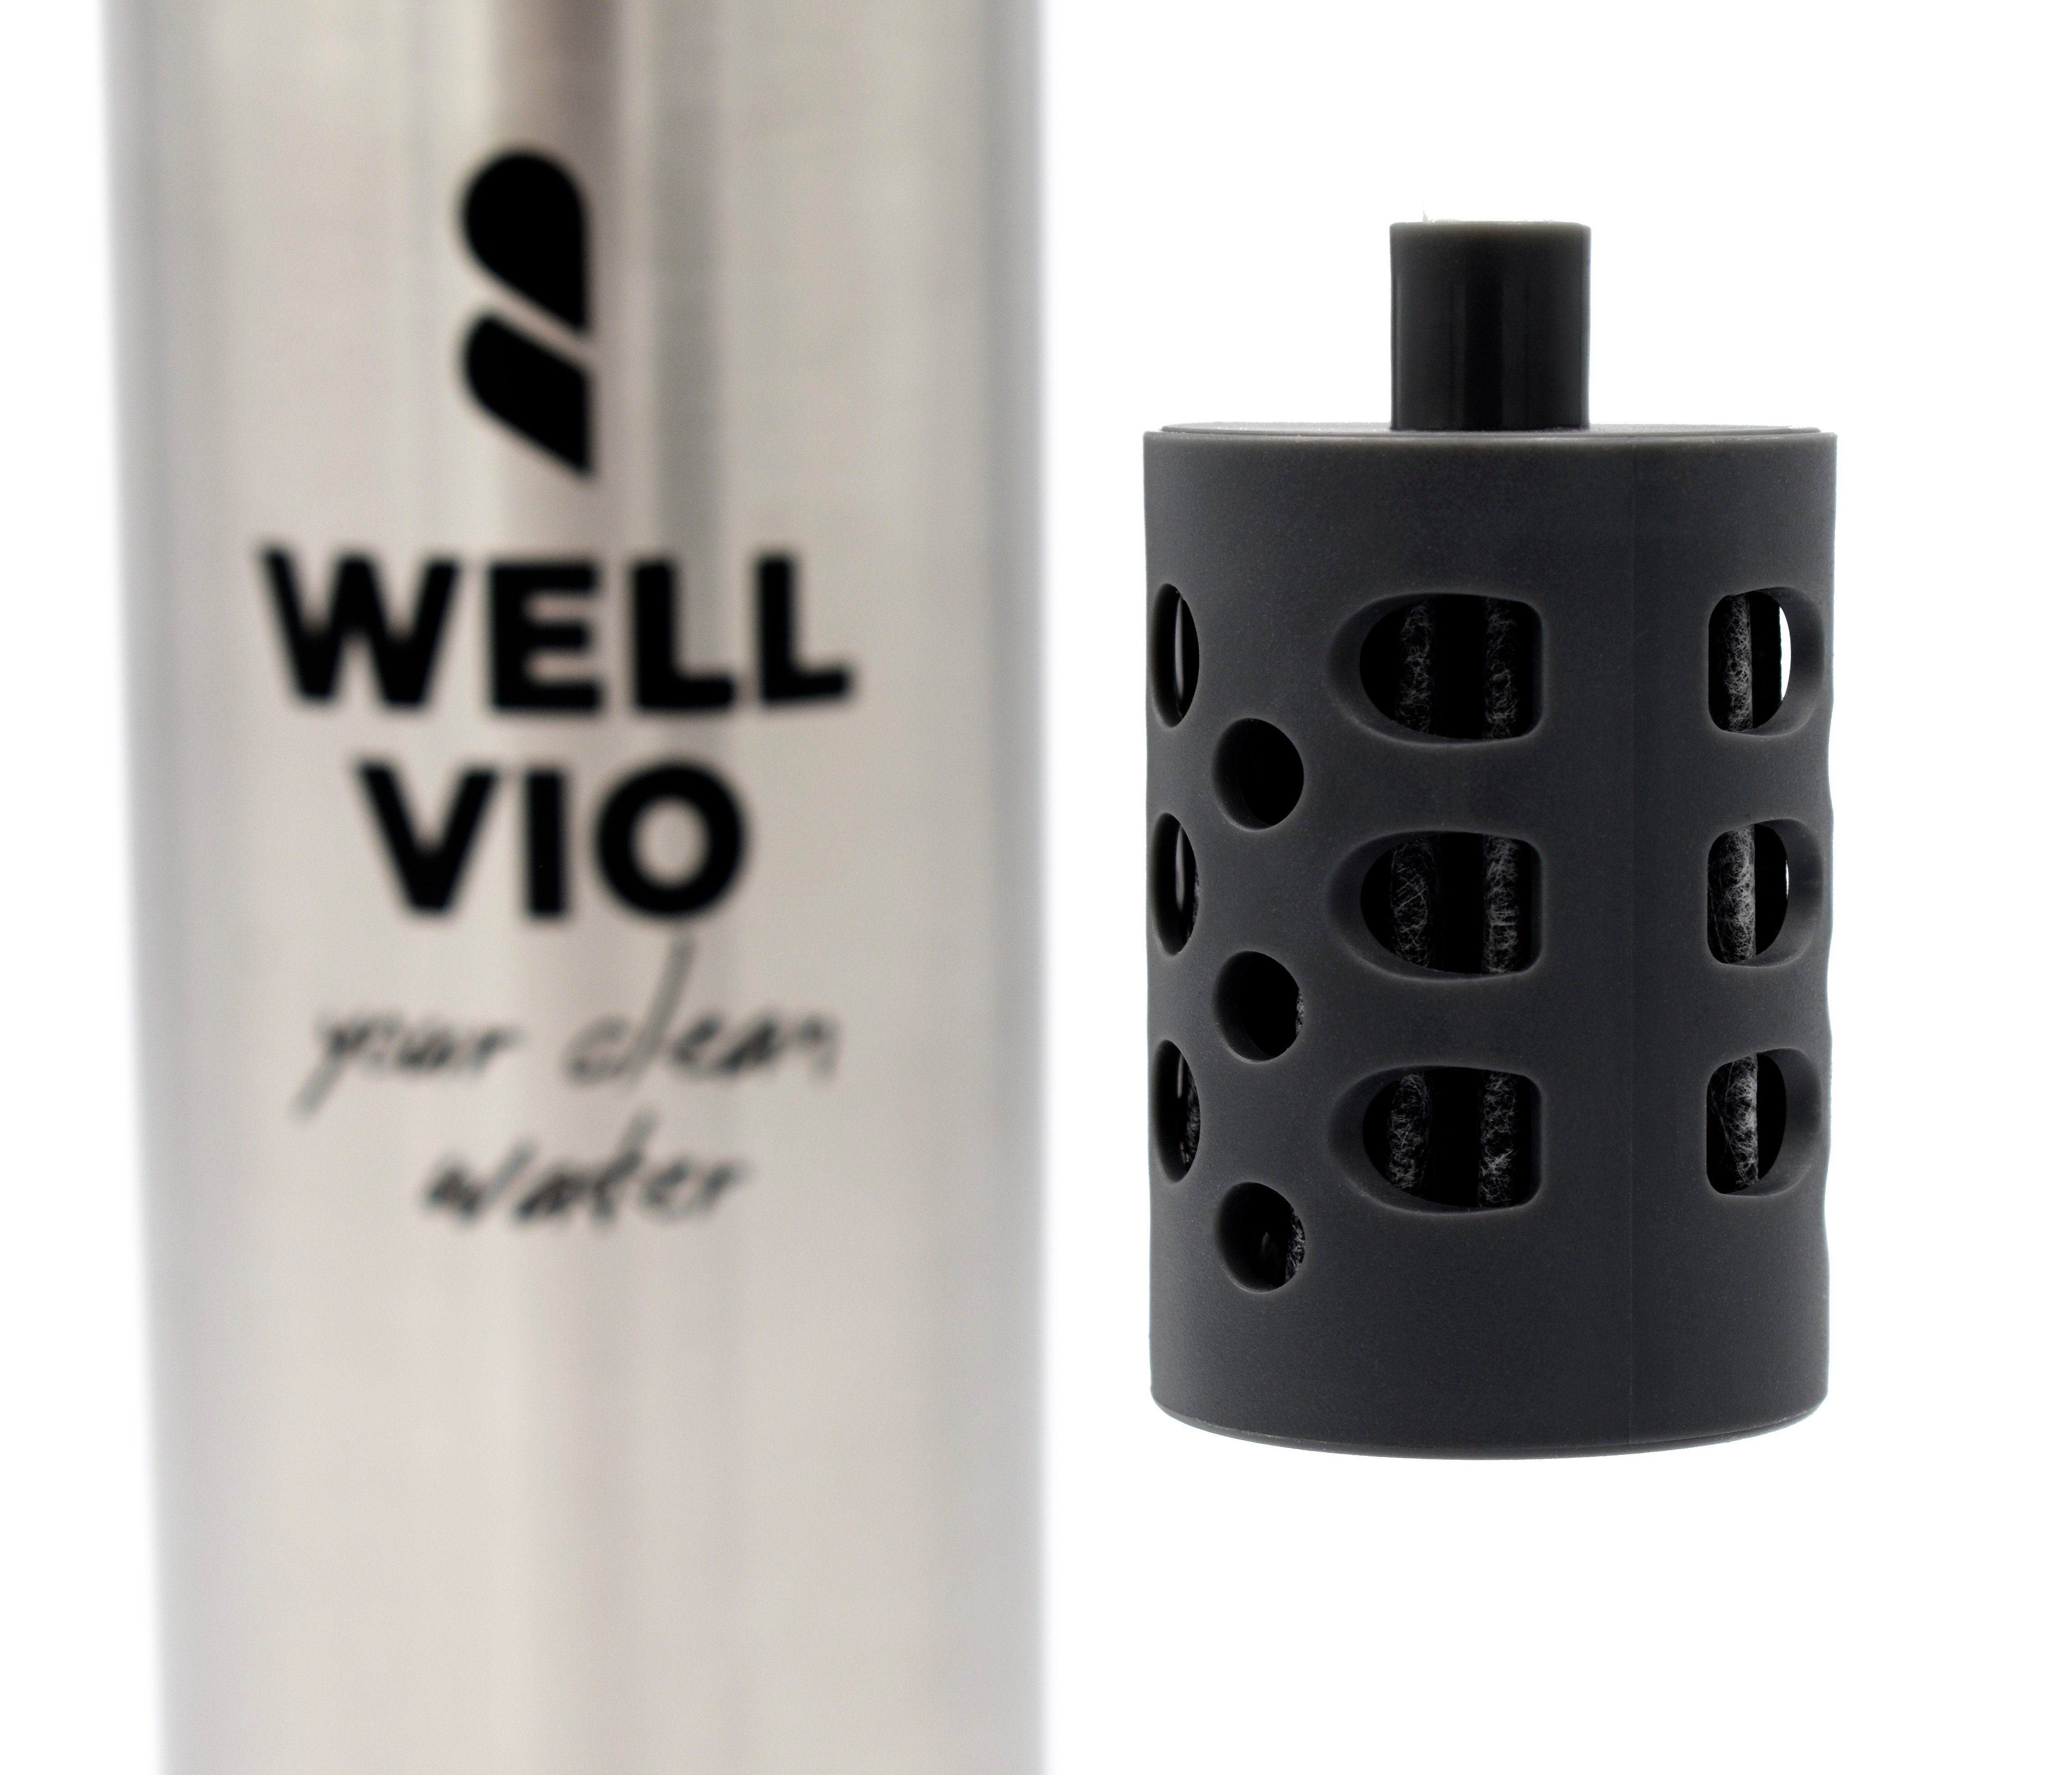 Edelstahl Viobottle WELLVIO mit Filterflasche Nano-Al2O3-Technologie Trinkflasche neuer